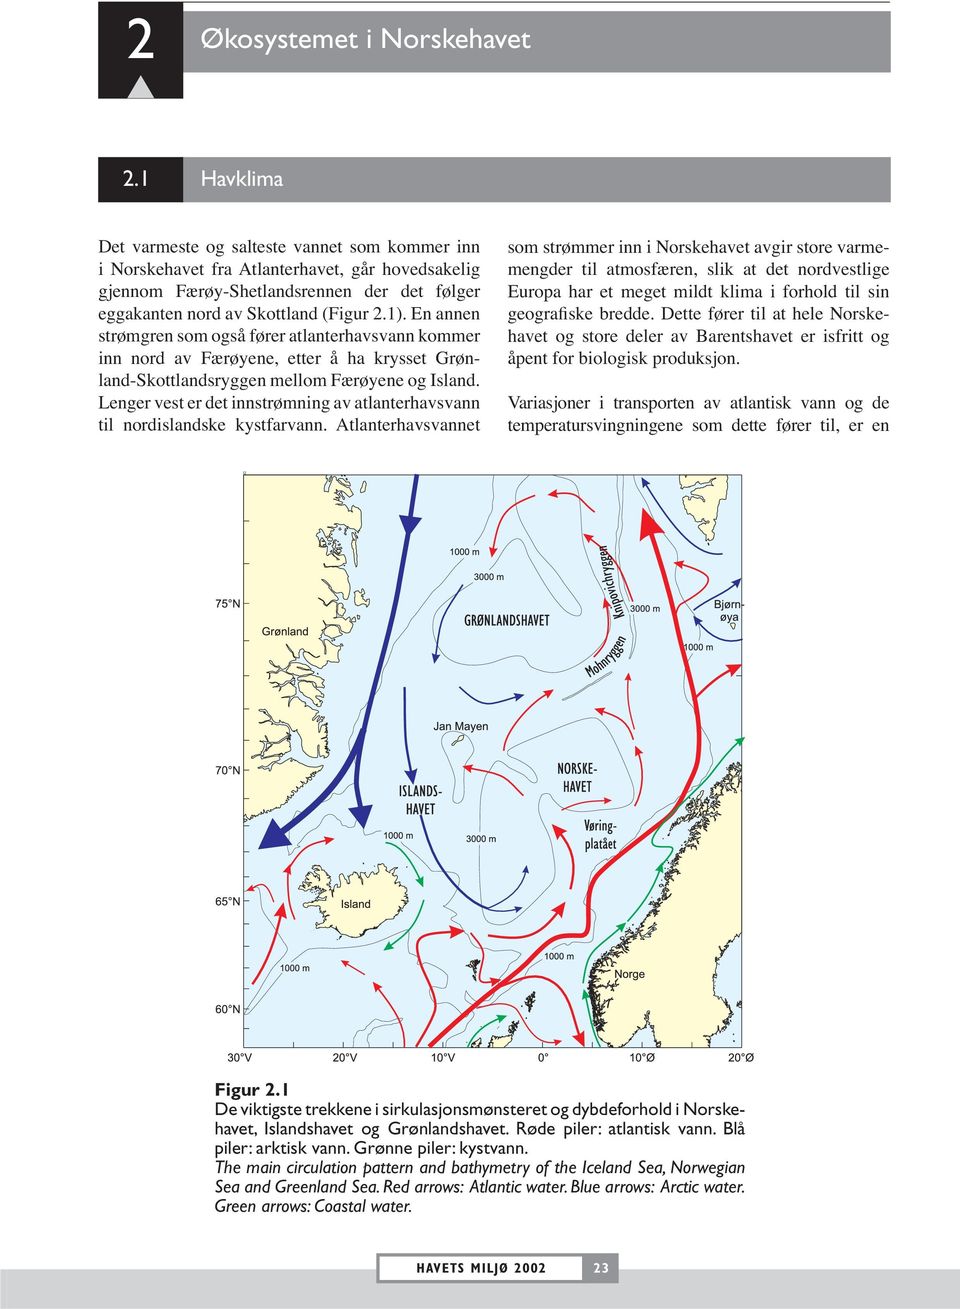 En annen strømgren som også fører atlanterhavsvann kommer inn nord av Færøyene, etter å ha krysset Grønland-Skottlandsryggen mellom Færøyene og Island.